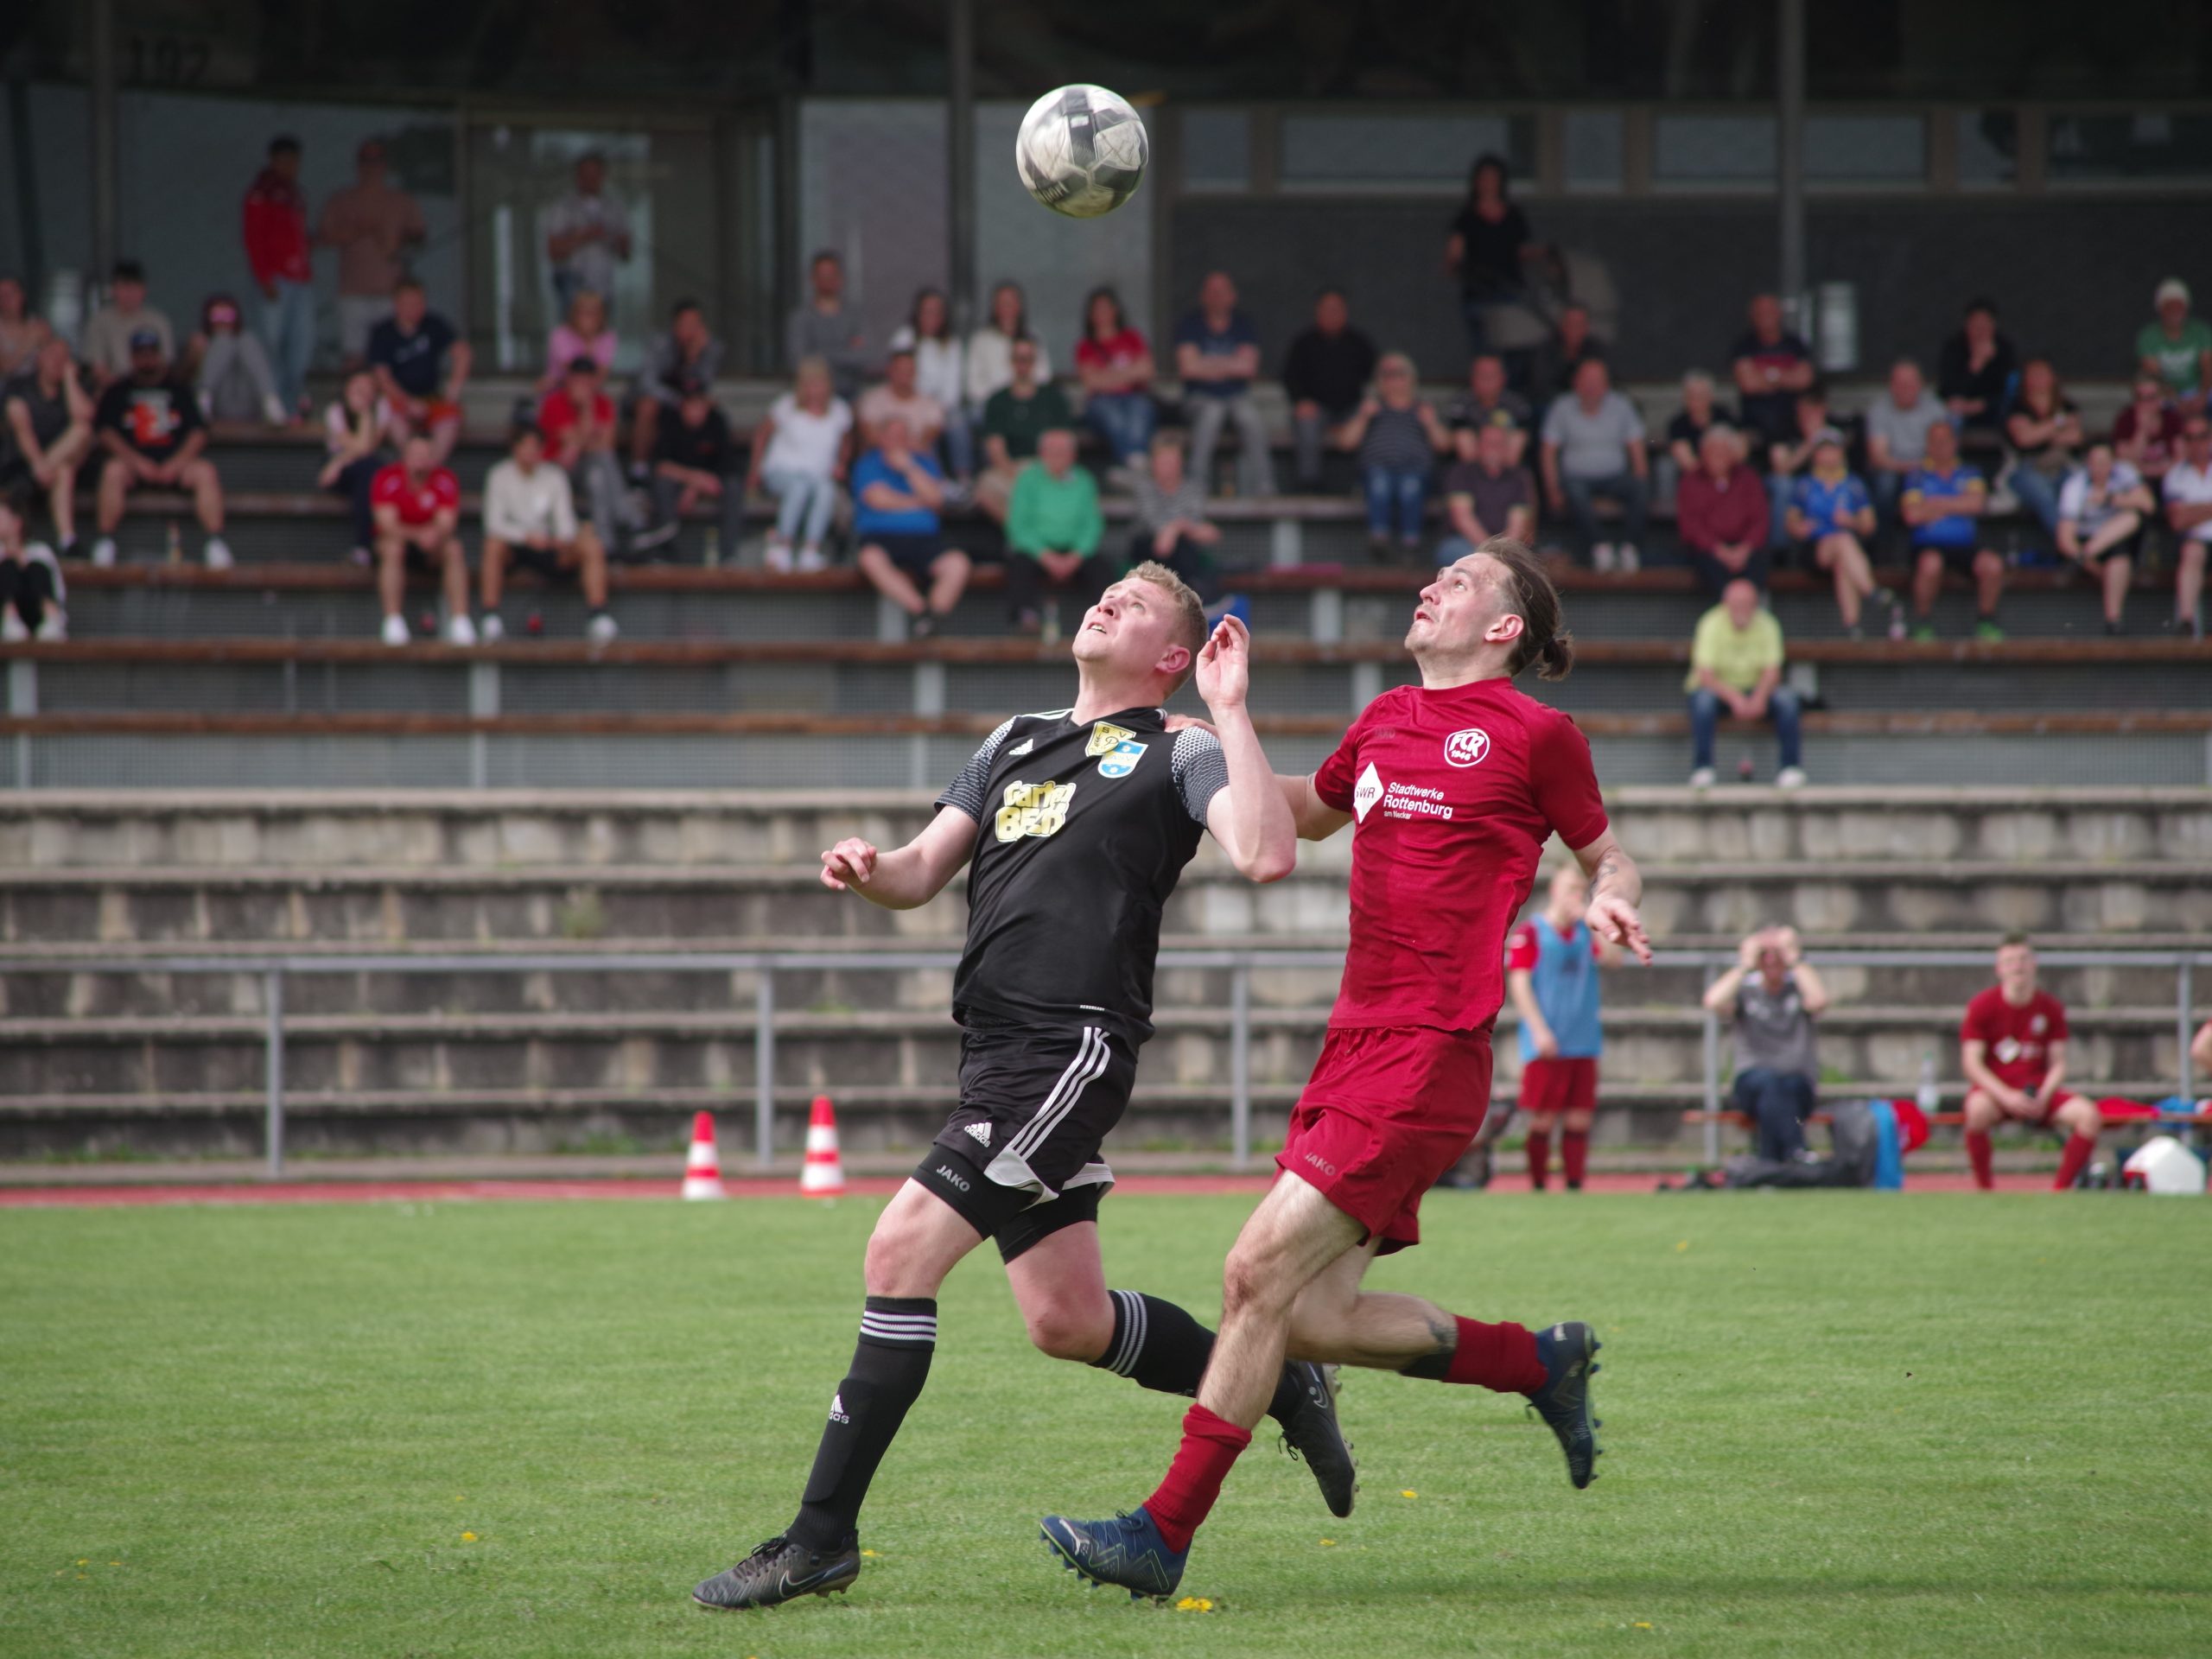 Spielbericht Kreisliga A3 – 23. Spieltag: Wildes 4:4-Spektakel beim Gastspiel in Rottenburg